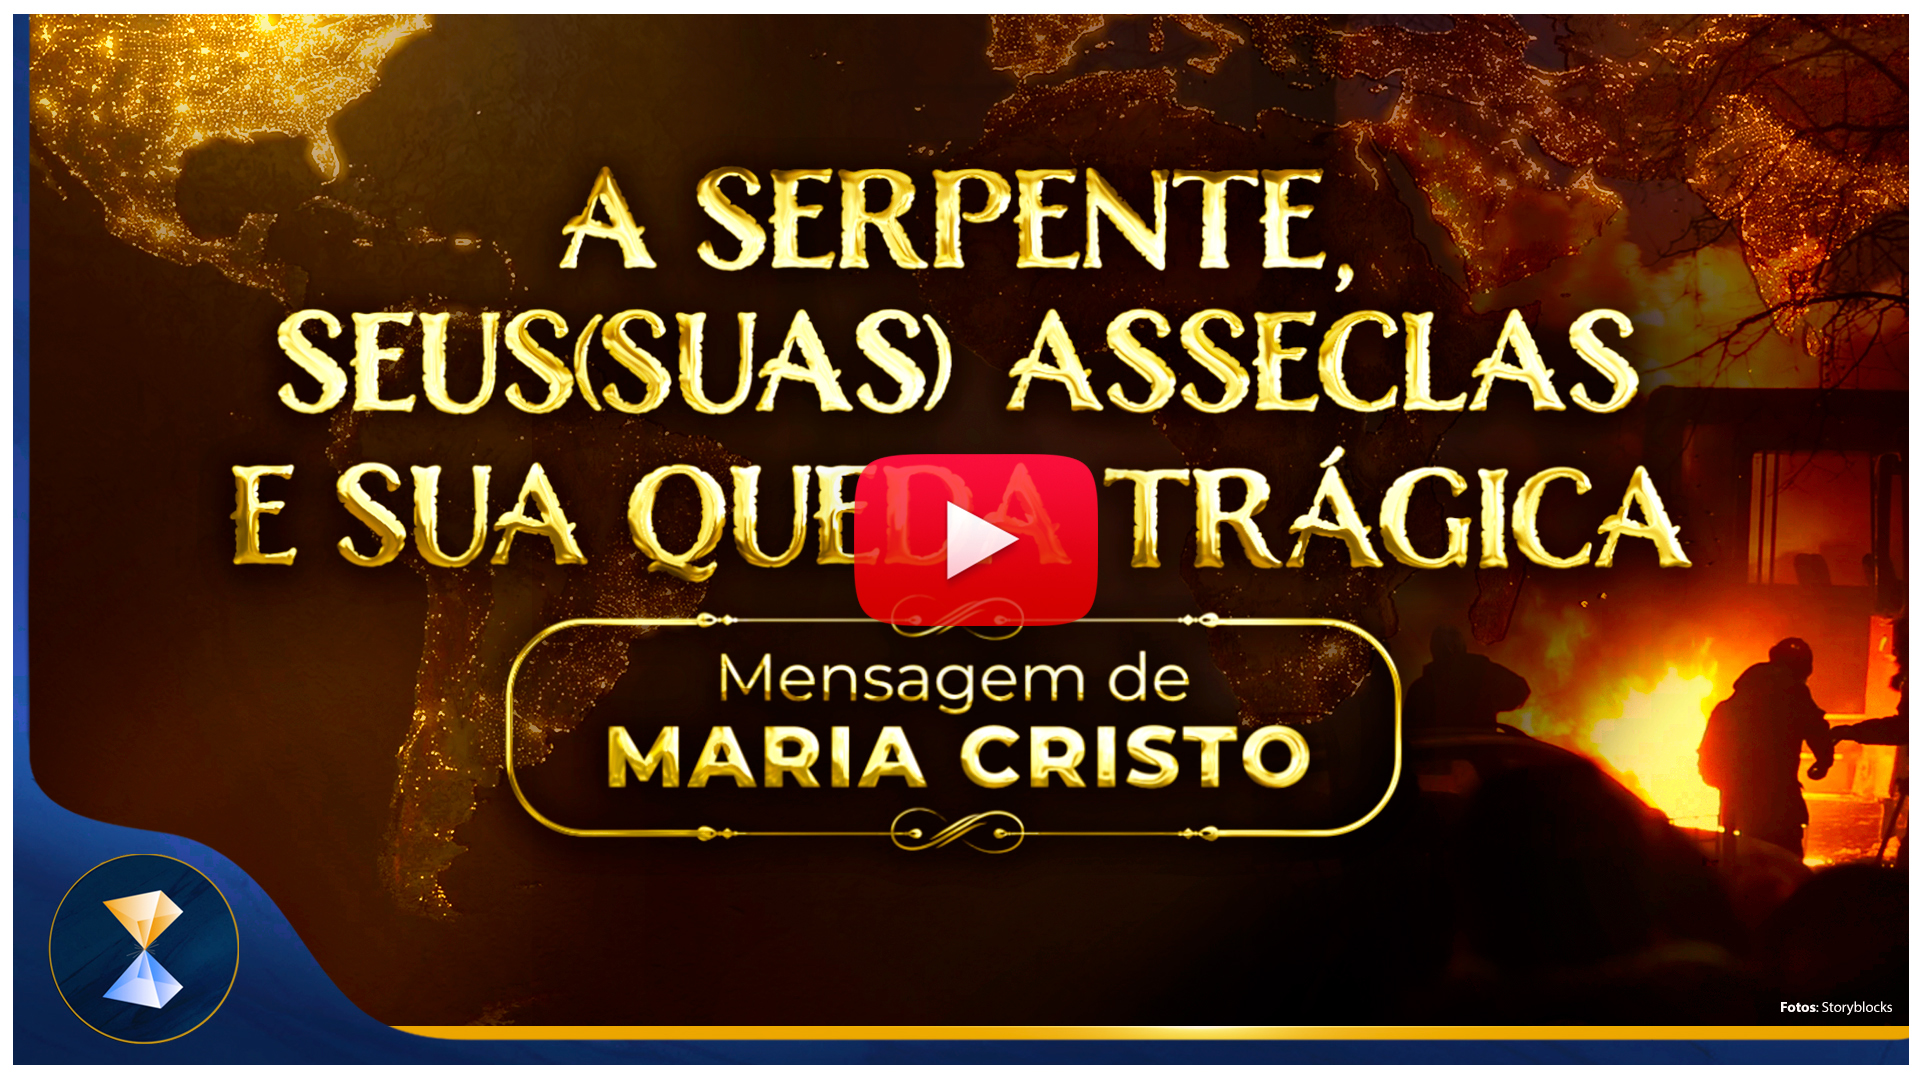 A serpente, seus(suas) asseclas e sua queda trágica – Mensagem de Maria Cristo